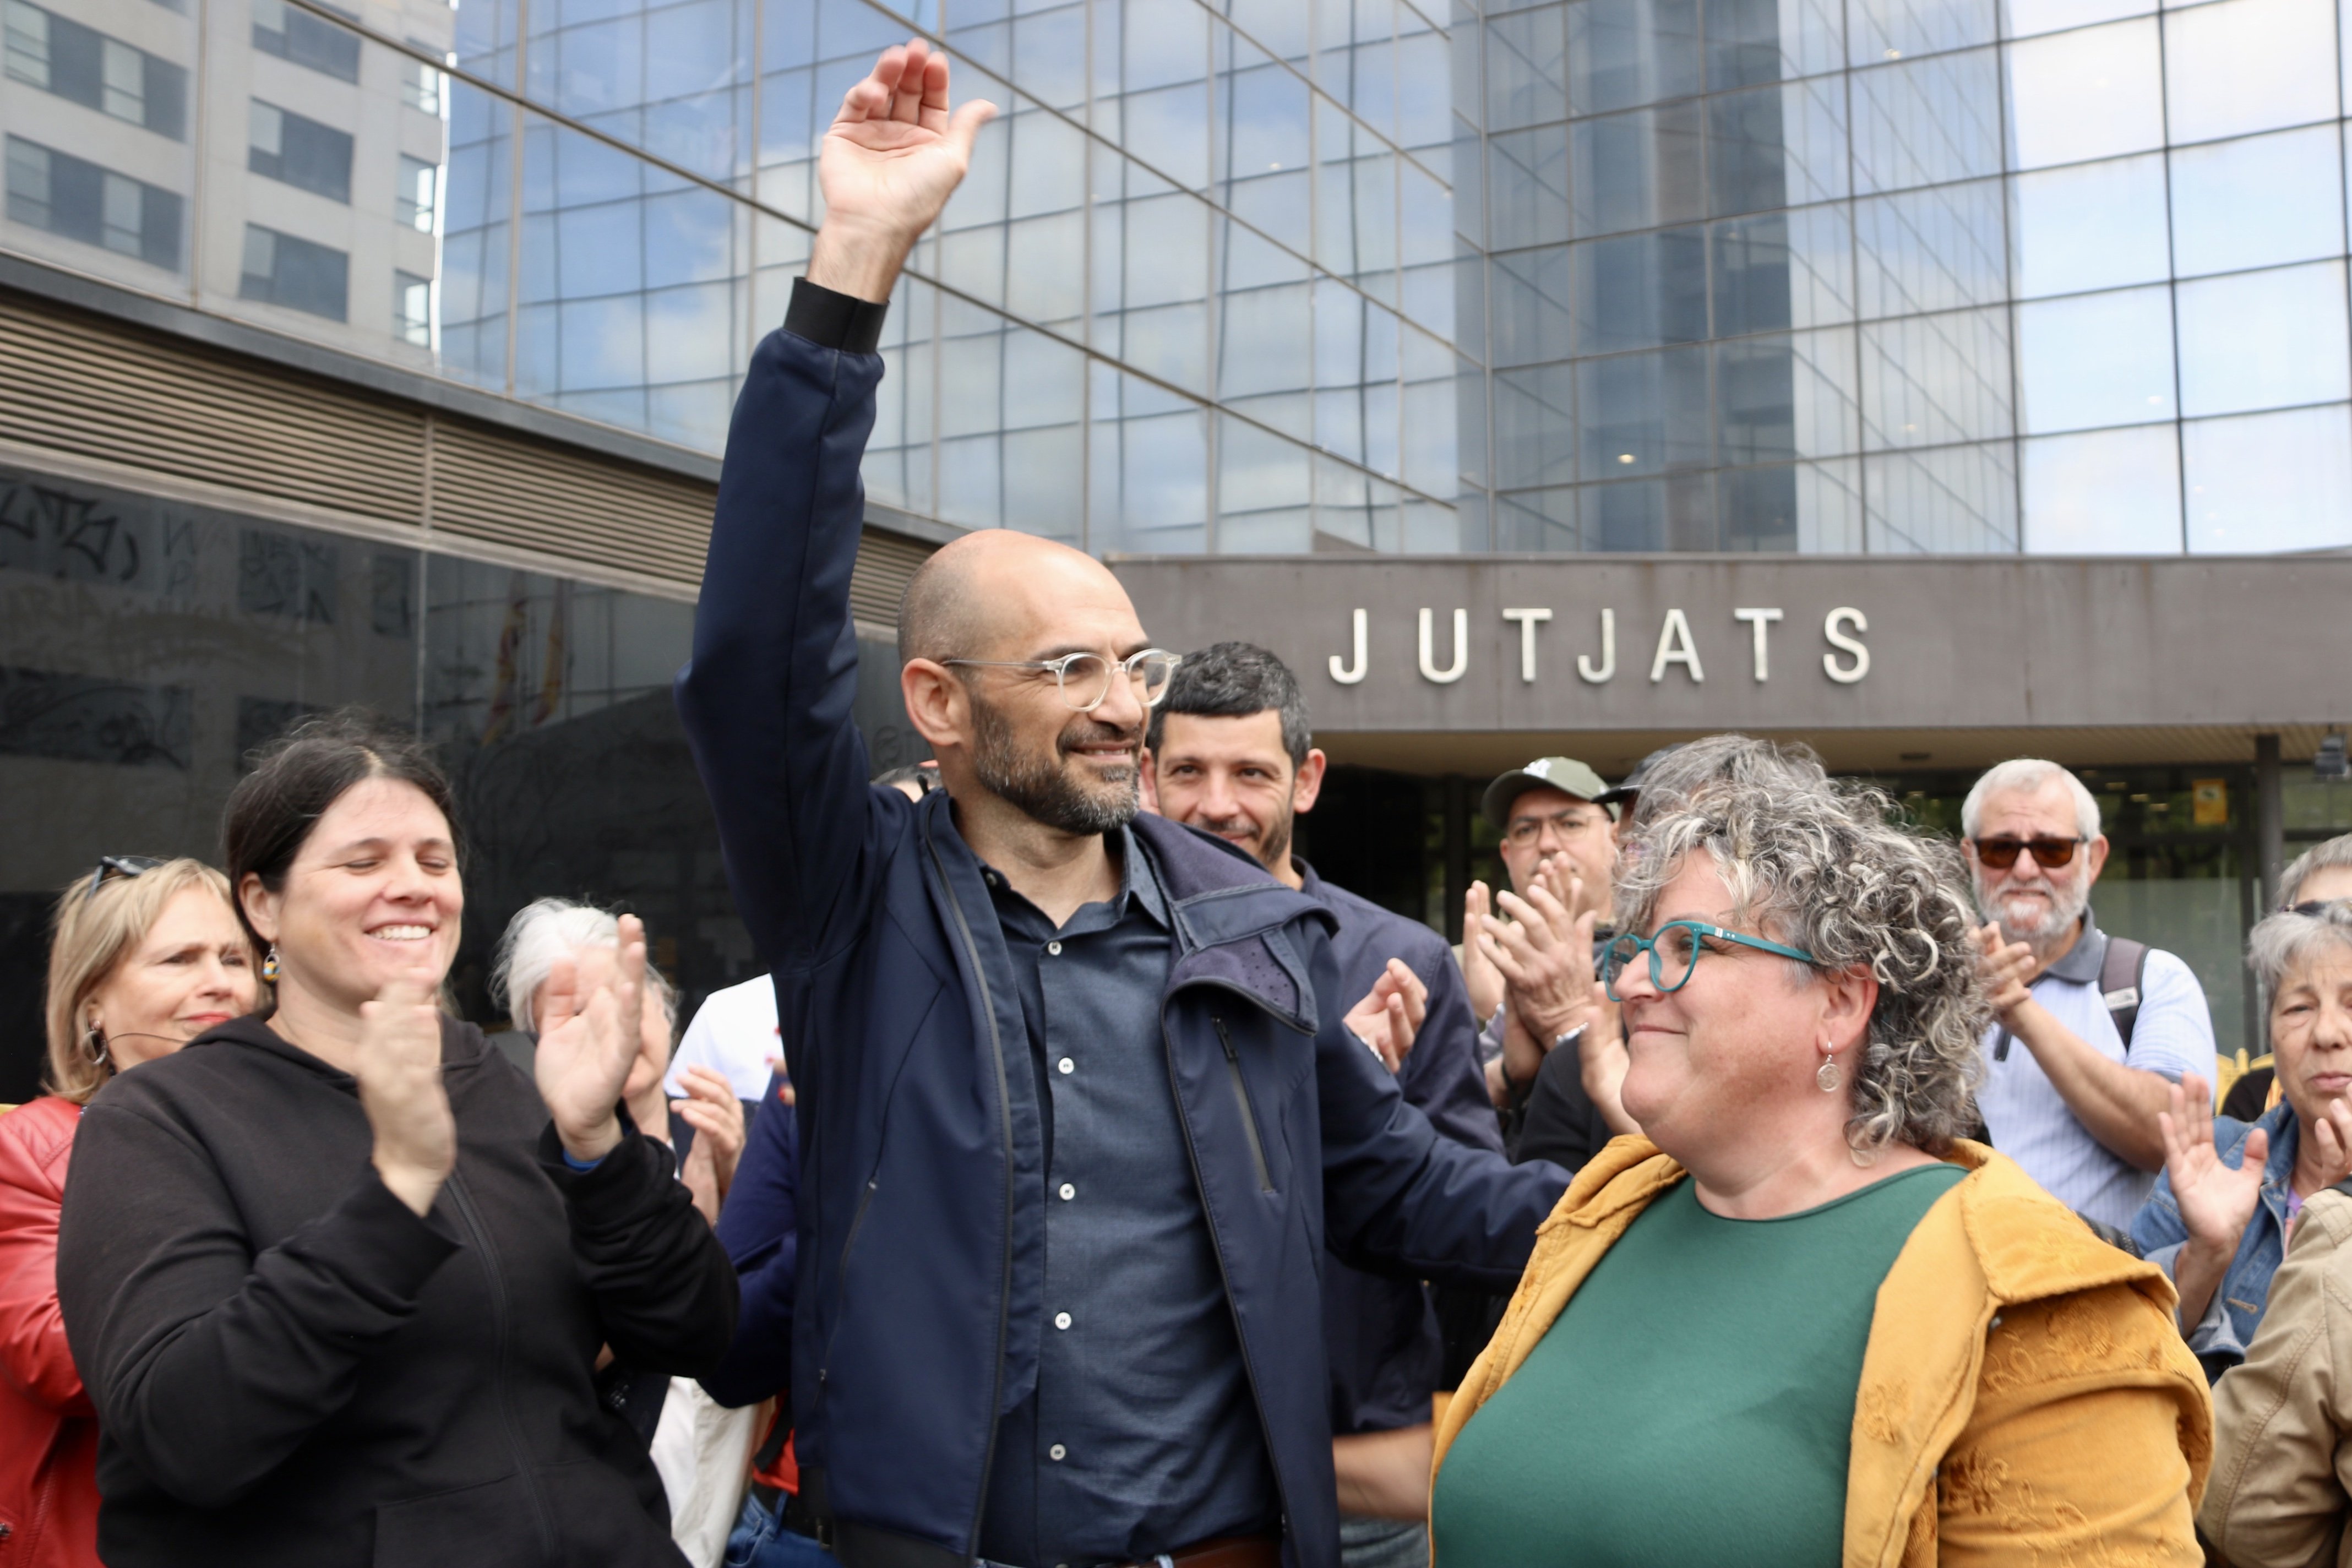 L'alcalde de Sabadell durant l'1-O, al jutjat: "No podia impedir una voluntat ciutadana majoritària"